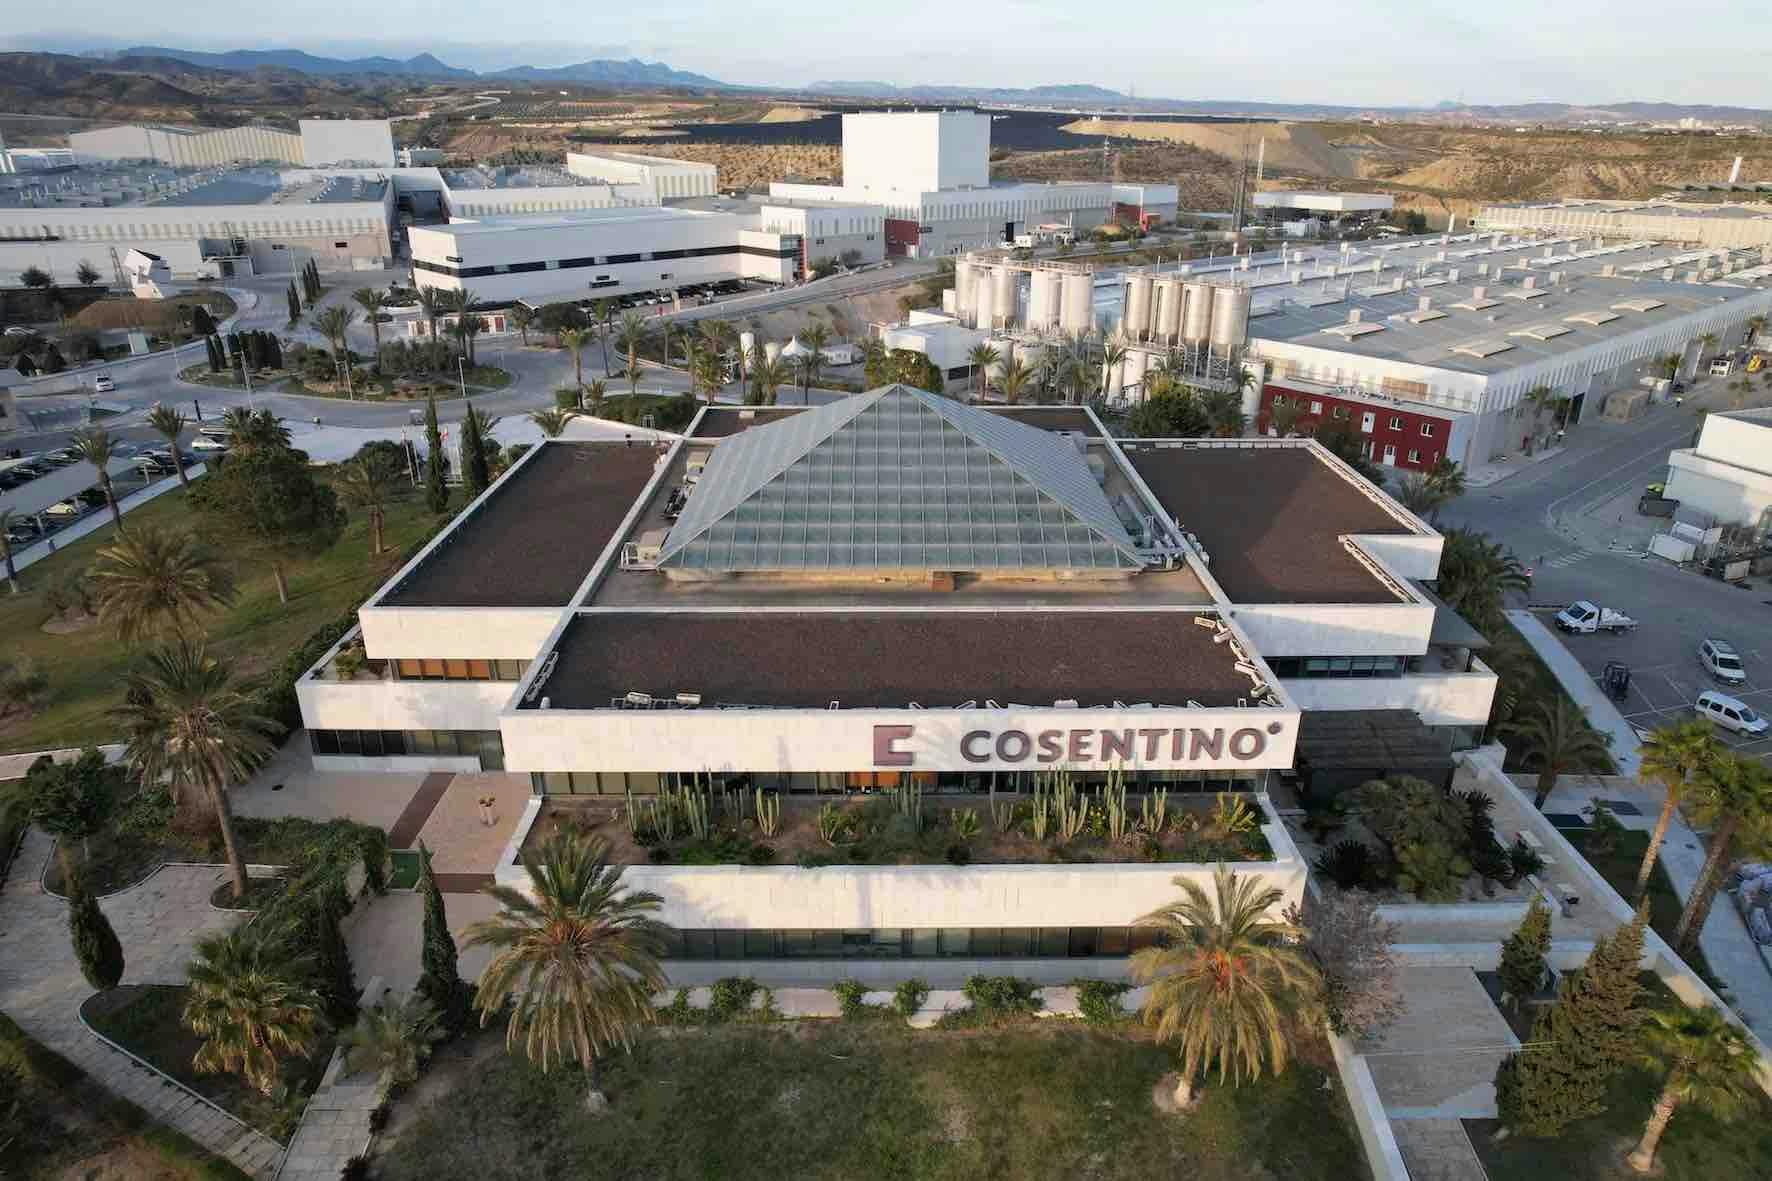 Image 90 of Parque Industrial Cosentino vista aerea oficinas d 1.jpg?auto=format%2Ccompress&ixlib=php 3.3 in Inspiration - Cosentino